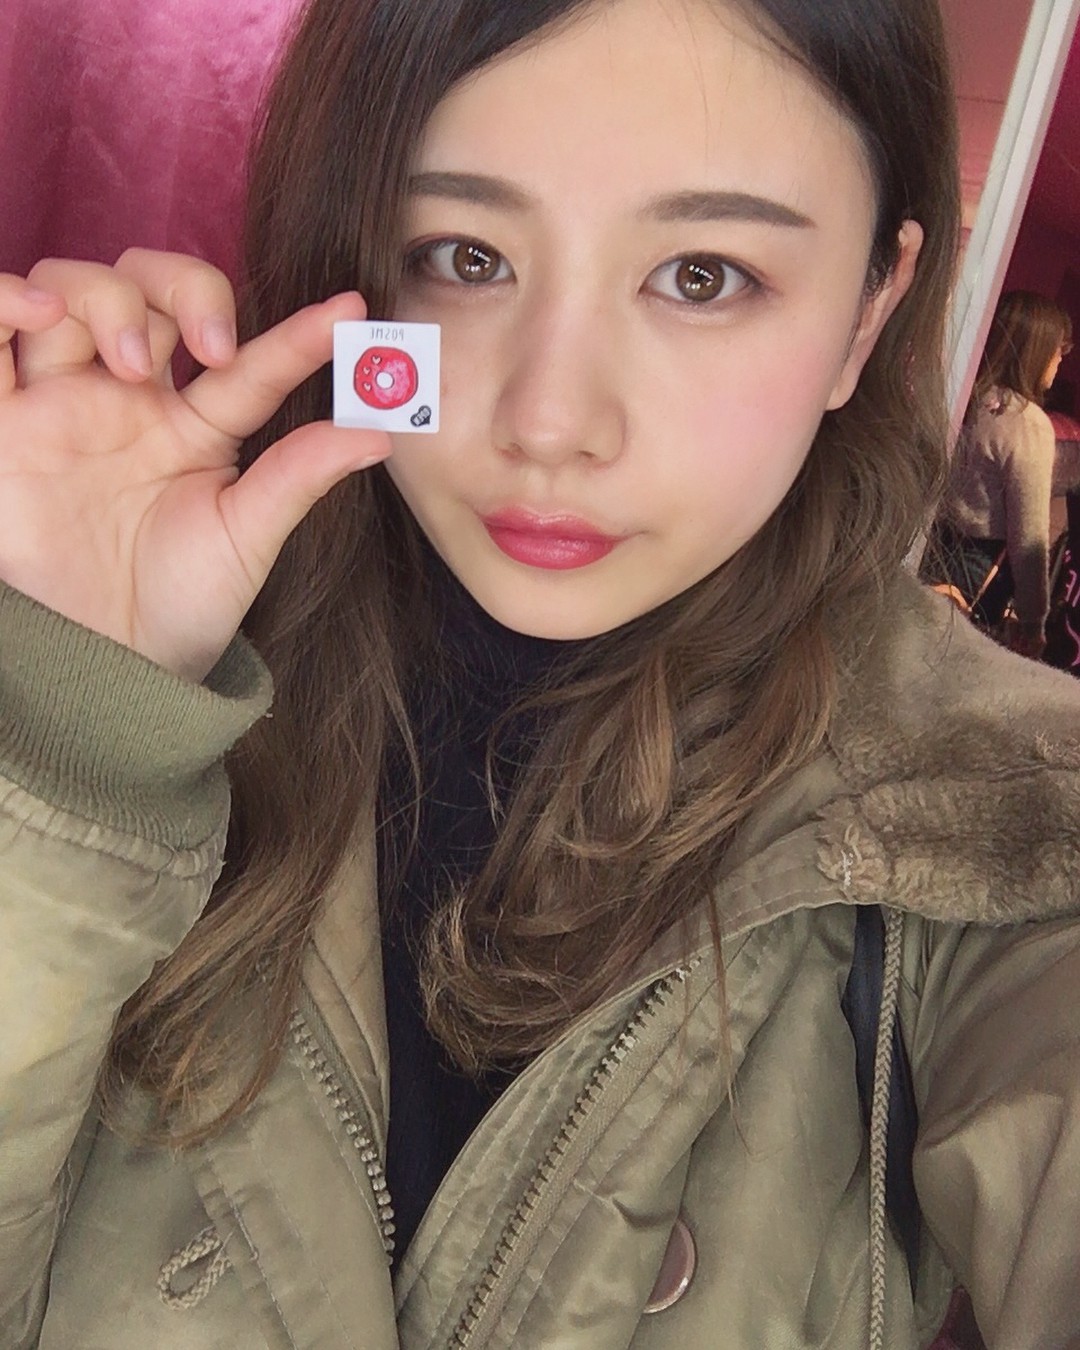 Con gái Nhật đang mê tít món mỹ phẩm chỉ 70k: nhỏ như tờ giấy mà kiêm luôn cả son môi, má hồng, phấn mắt - Ảnh 2.